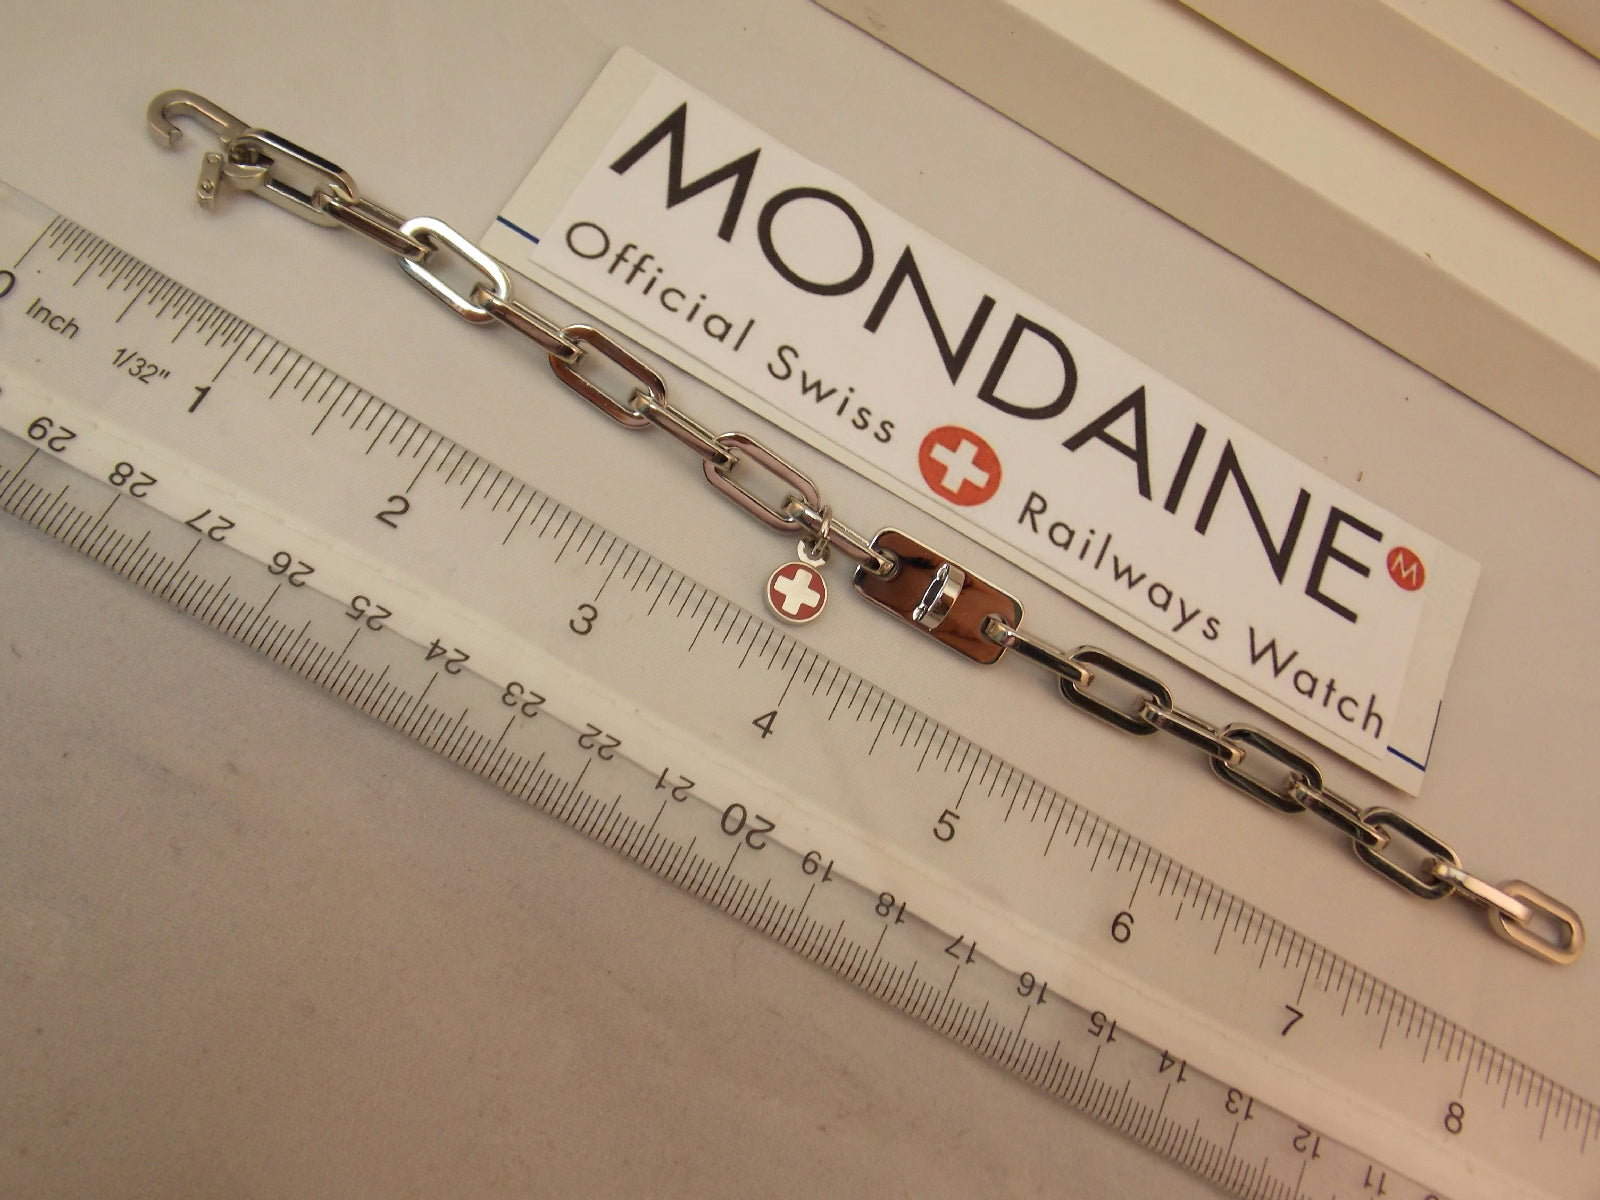 Mondaine Watch Charm Bracelet Stainless Steel Attach Your Favorite Trinket/Watch